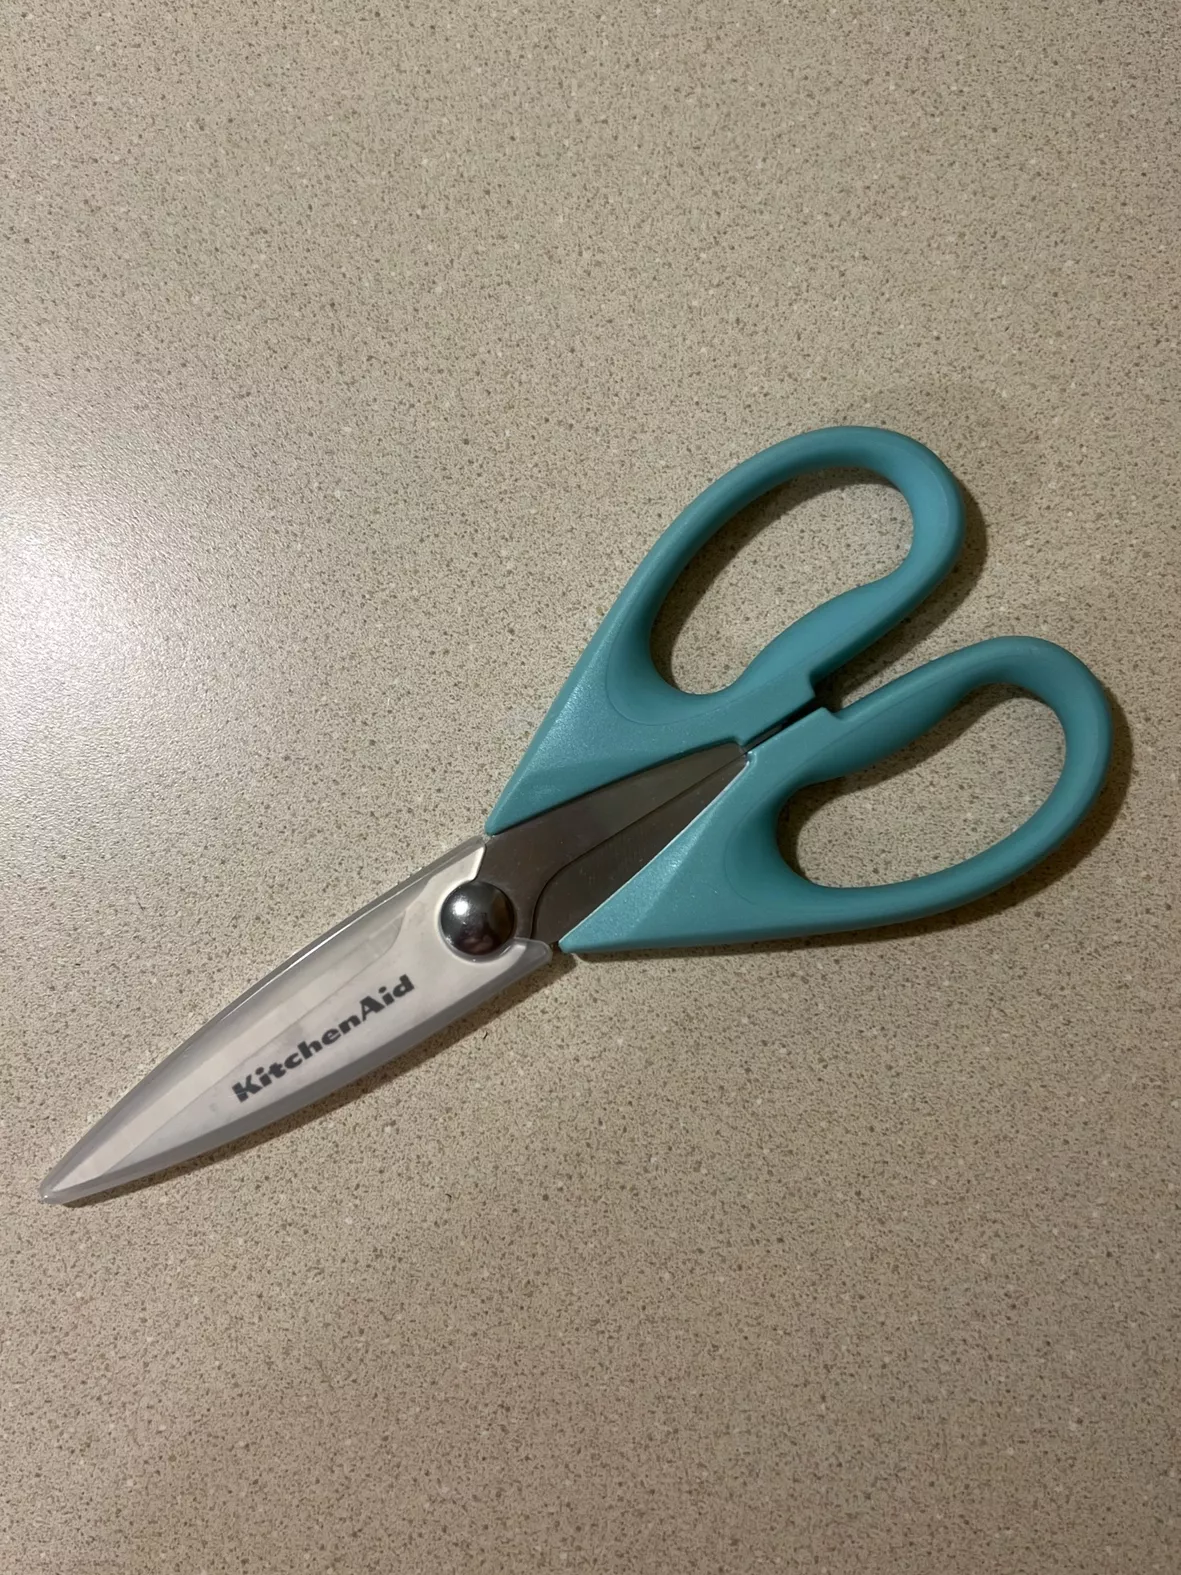 KitchenAid Kitchen Scissors & Shears for sale